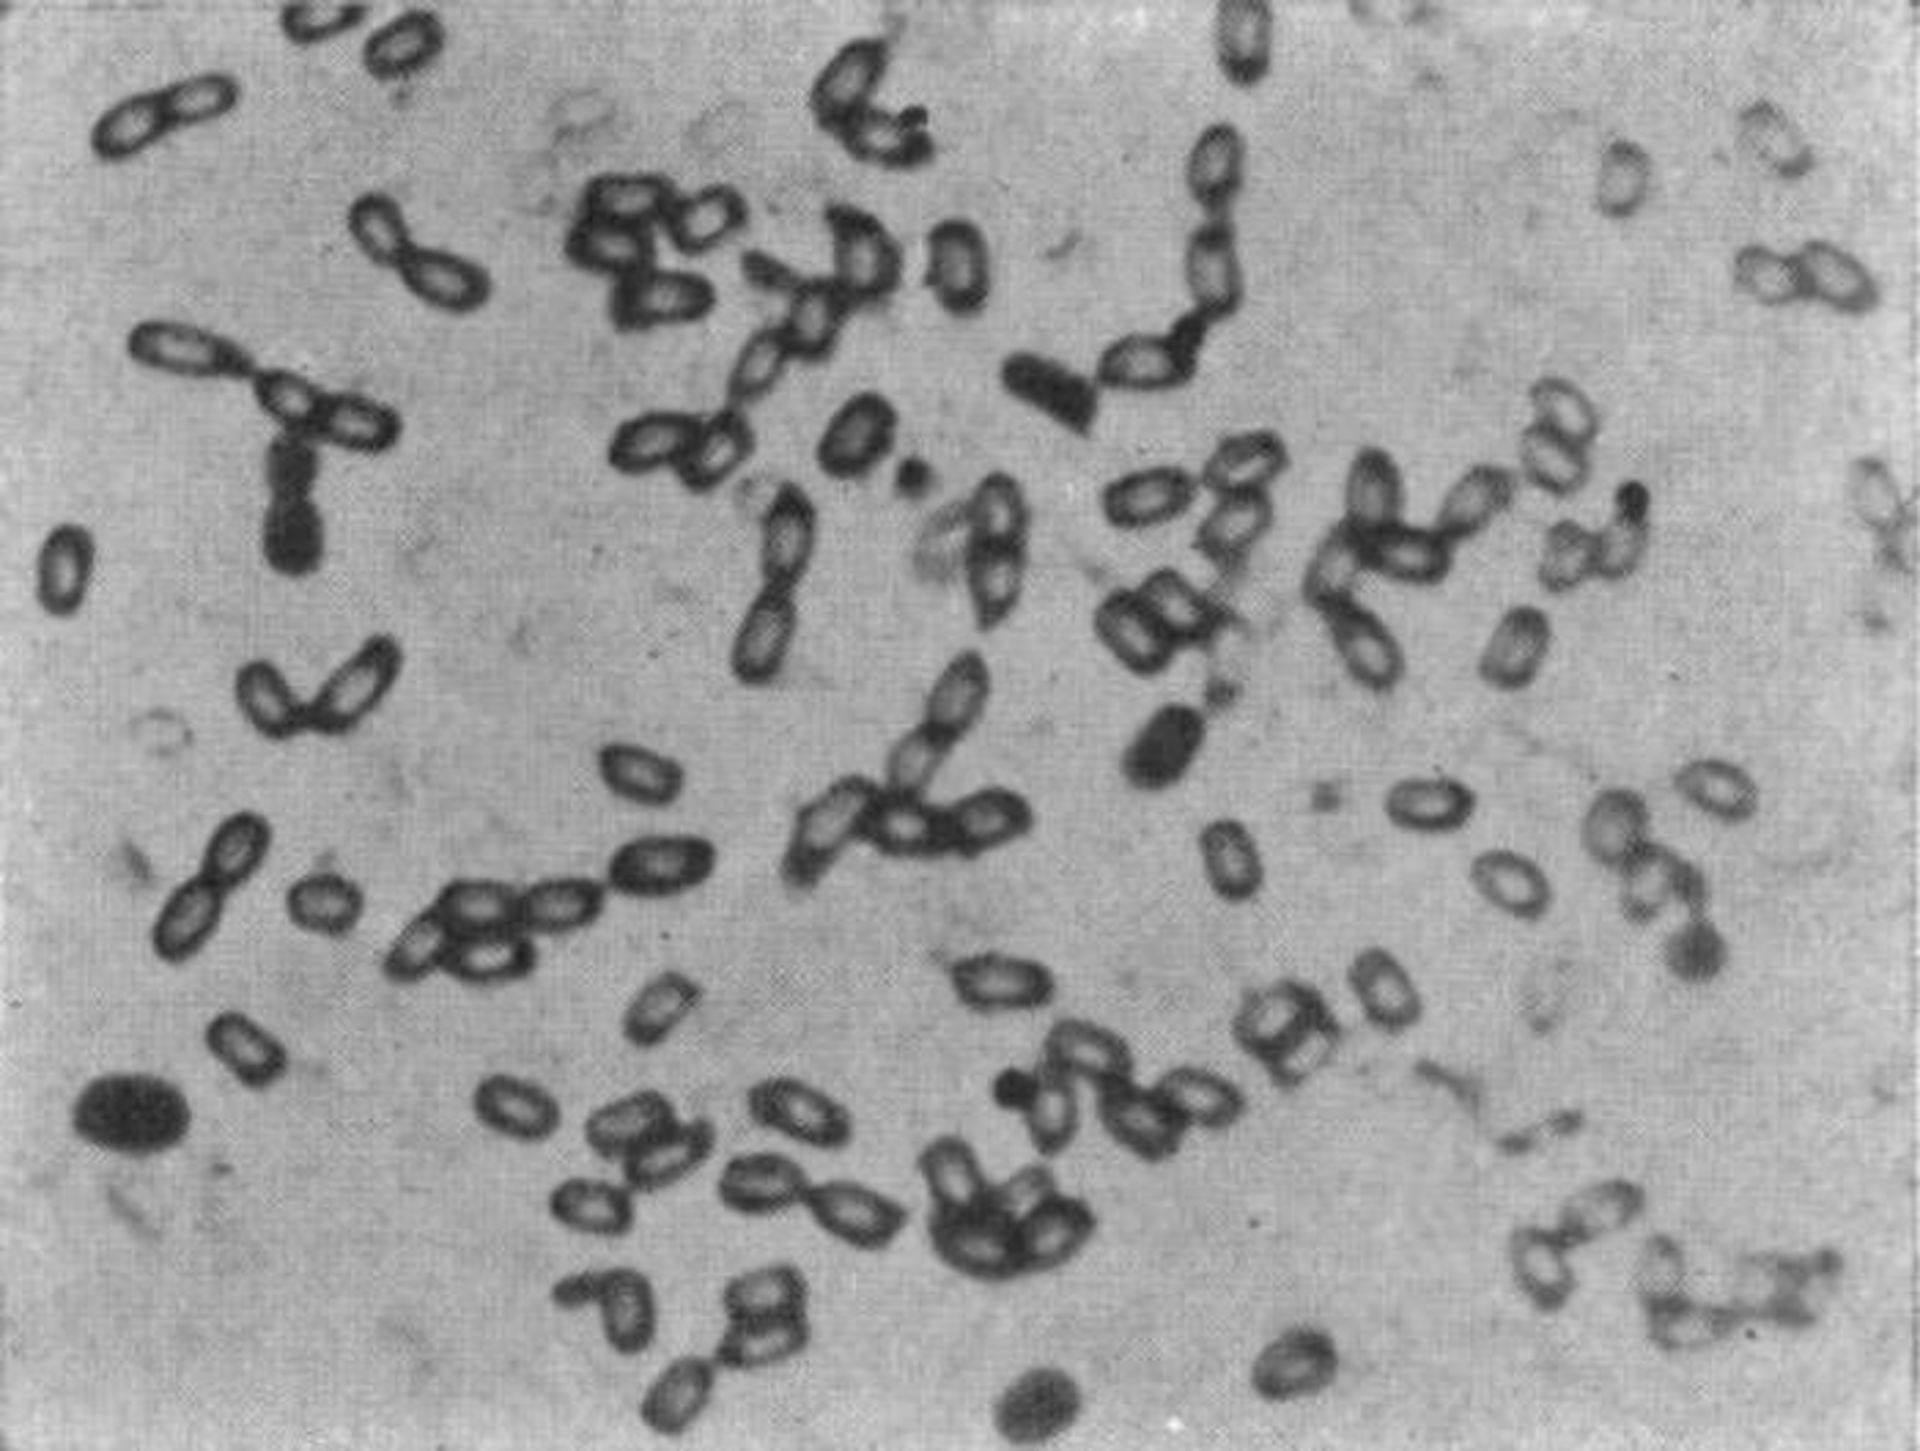 باکتری های فناناپذیر / Immortal bacteria